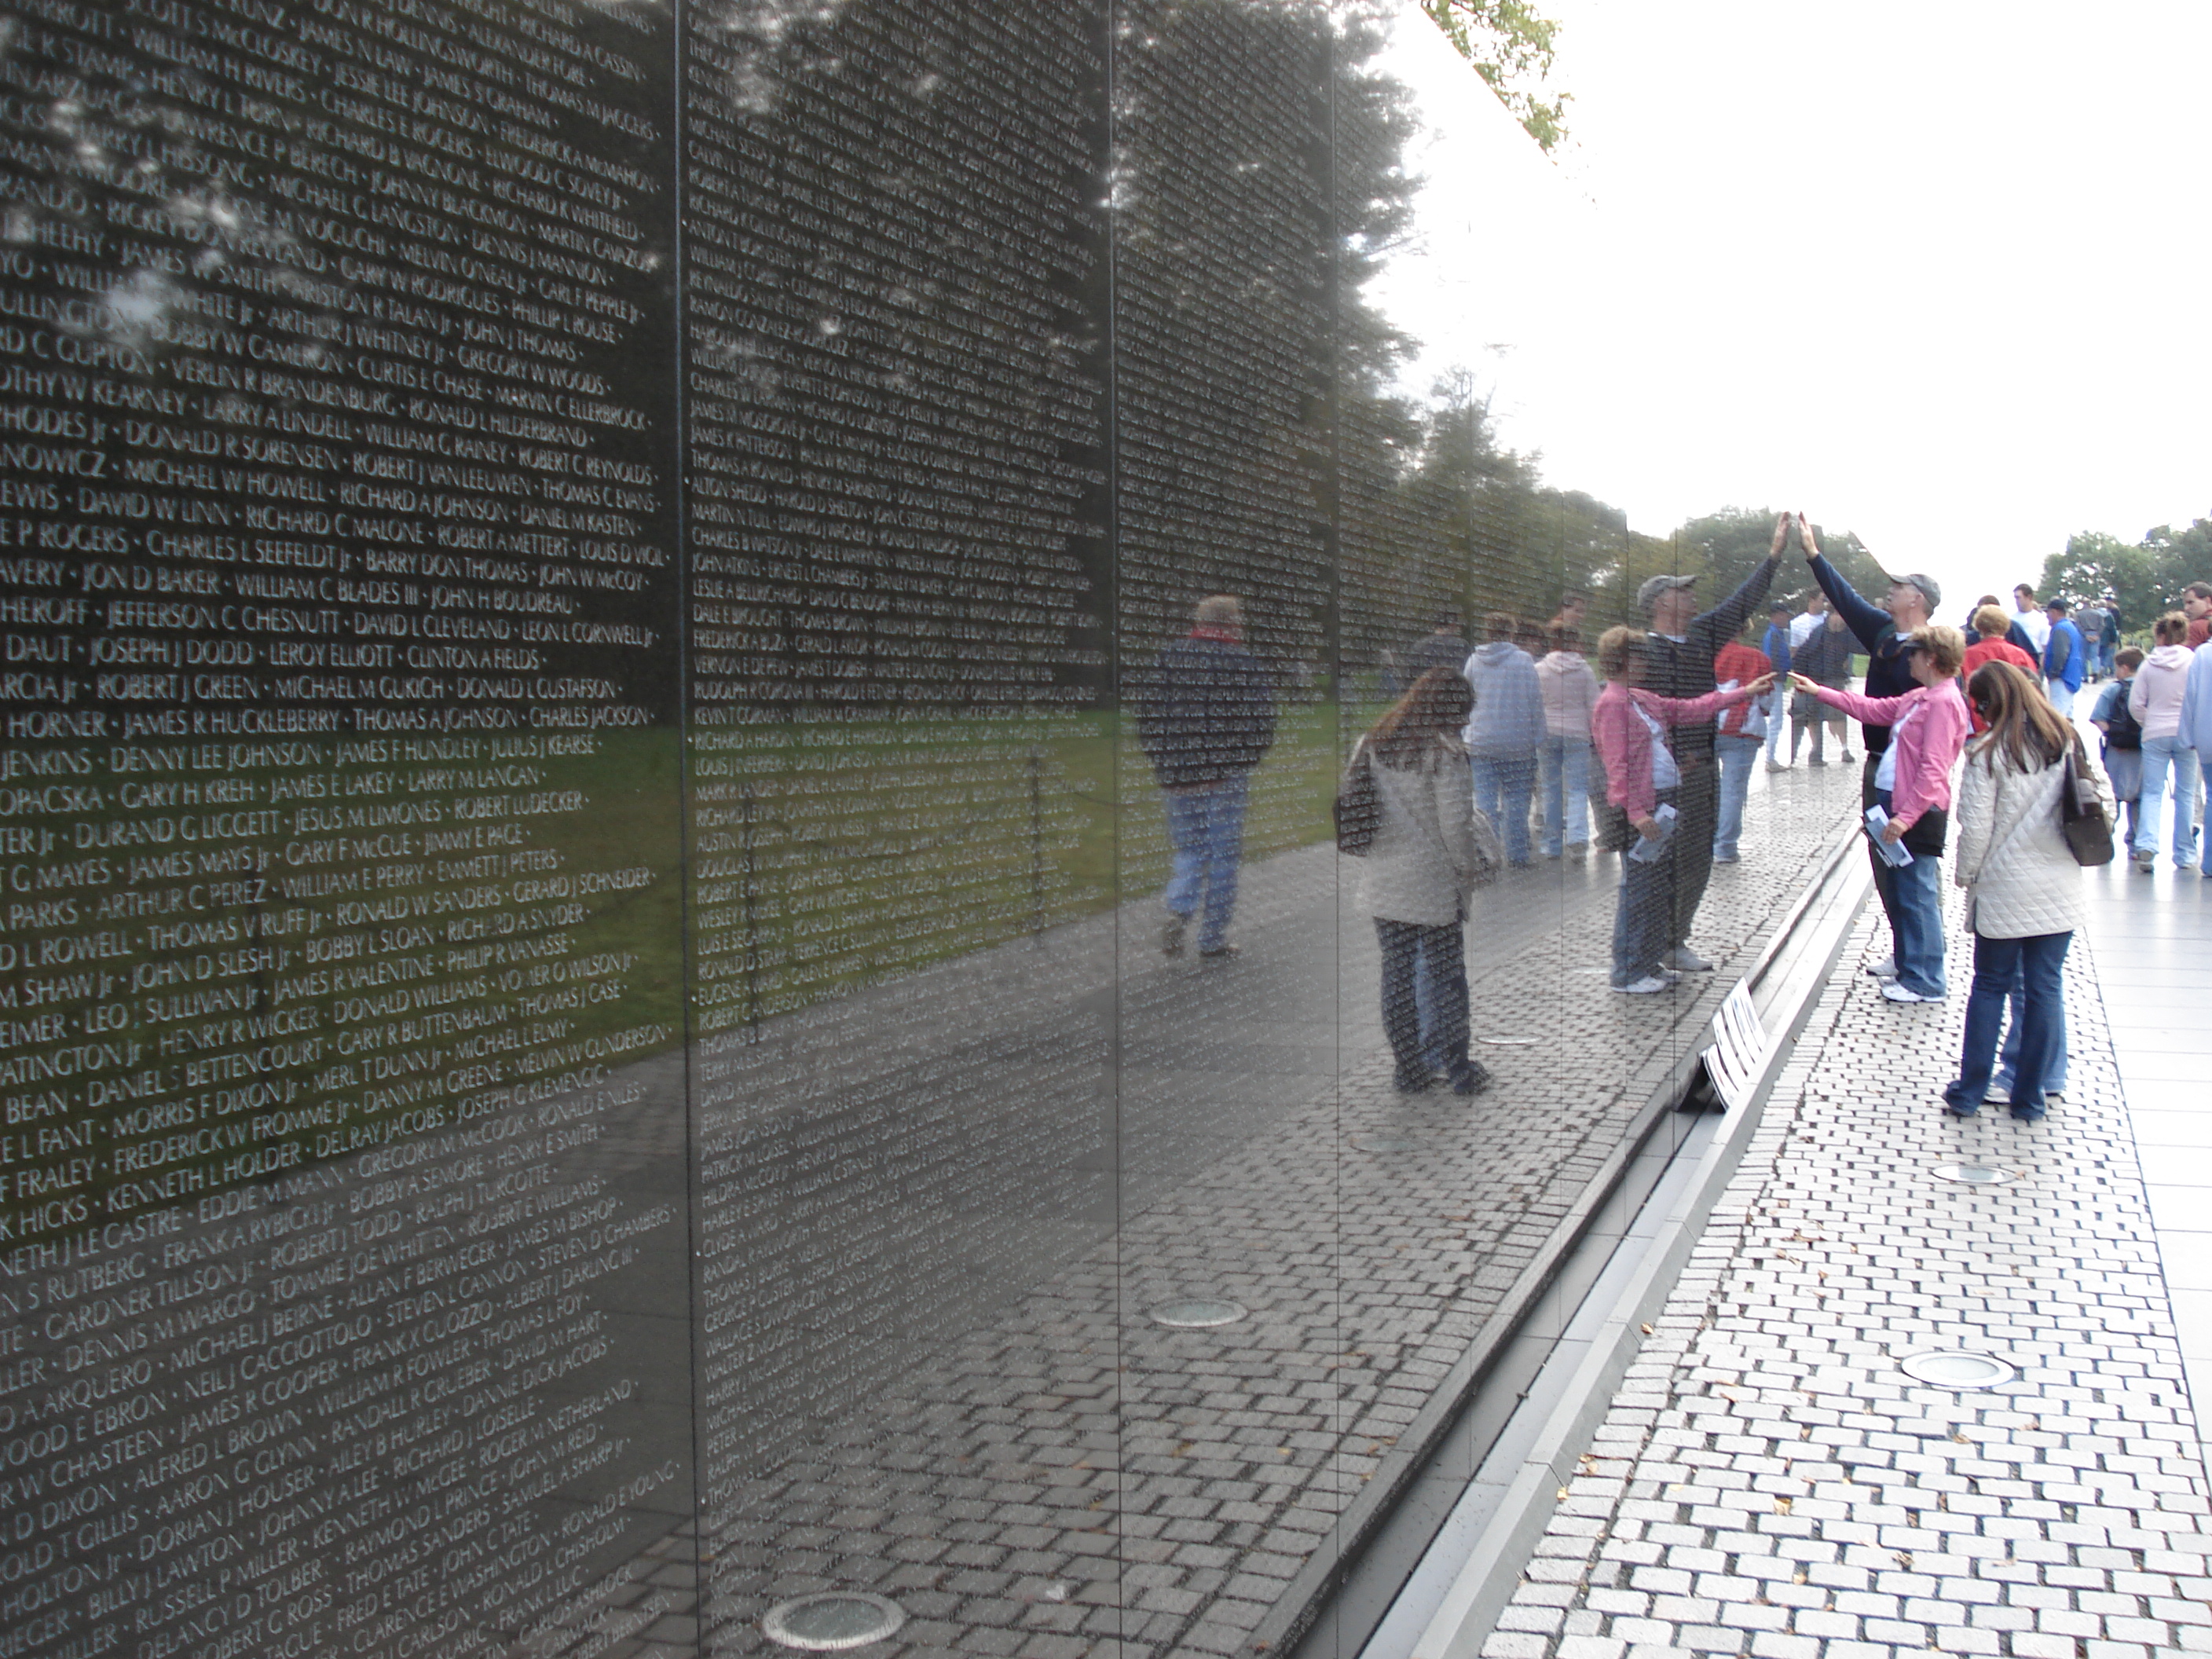 File:Vietnam war memorial 1.jpg - Wikipedia